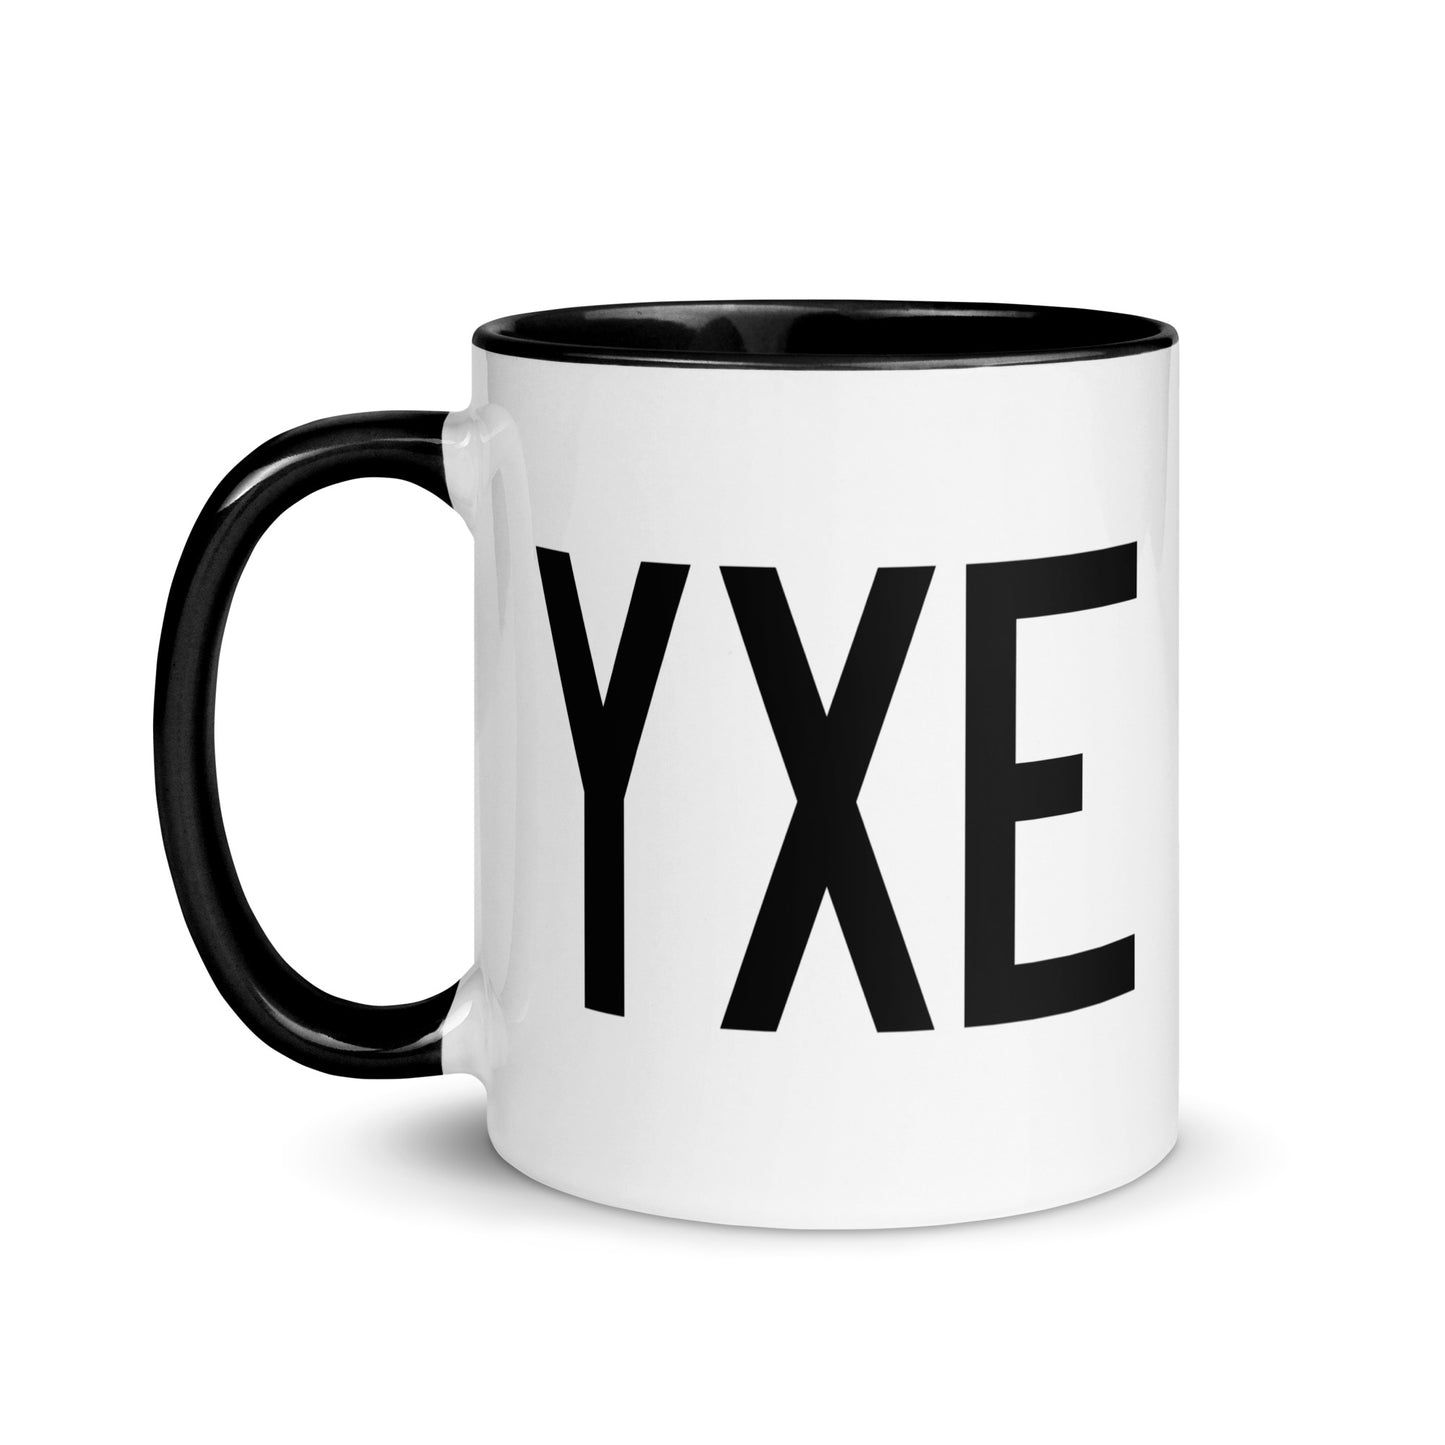 Aviation-Theme Coffee Mug - Black • YXE Saskatoon • YHM Designs - Image 03